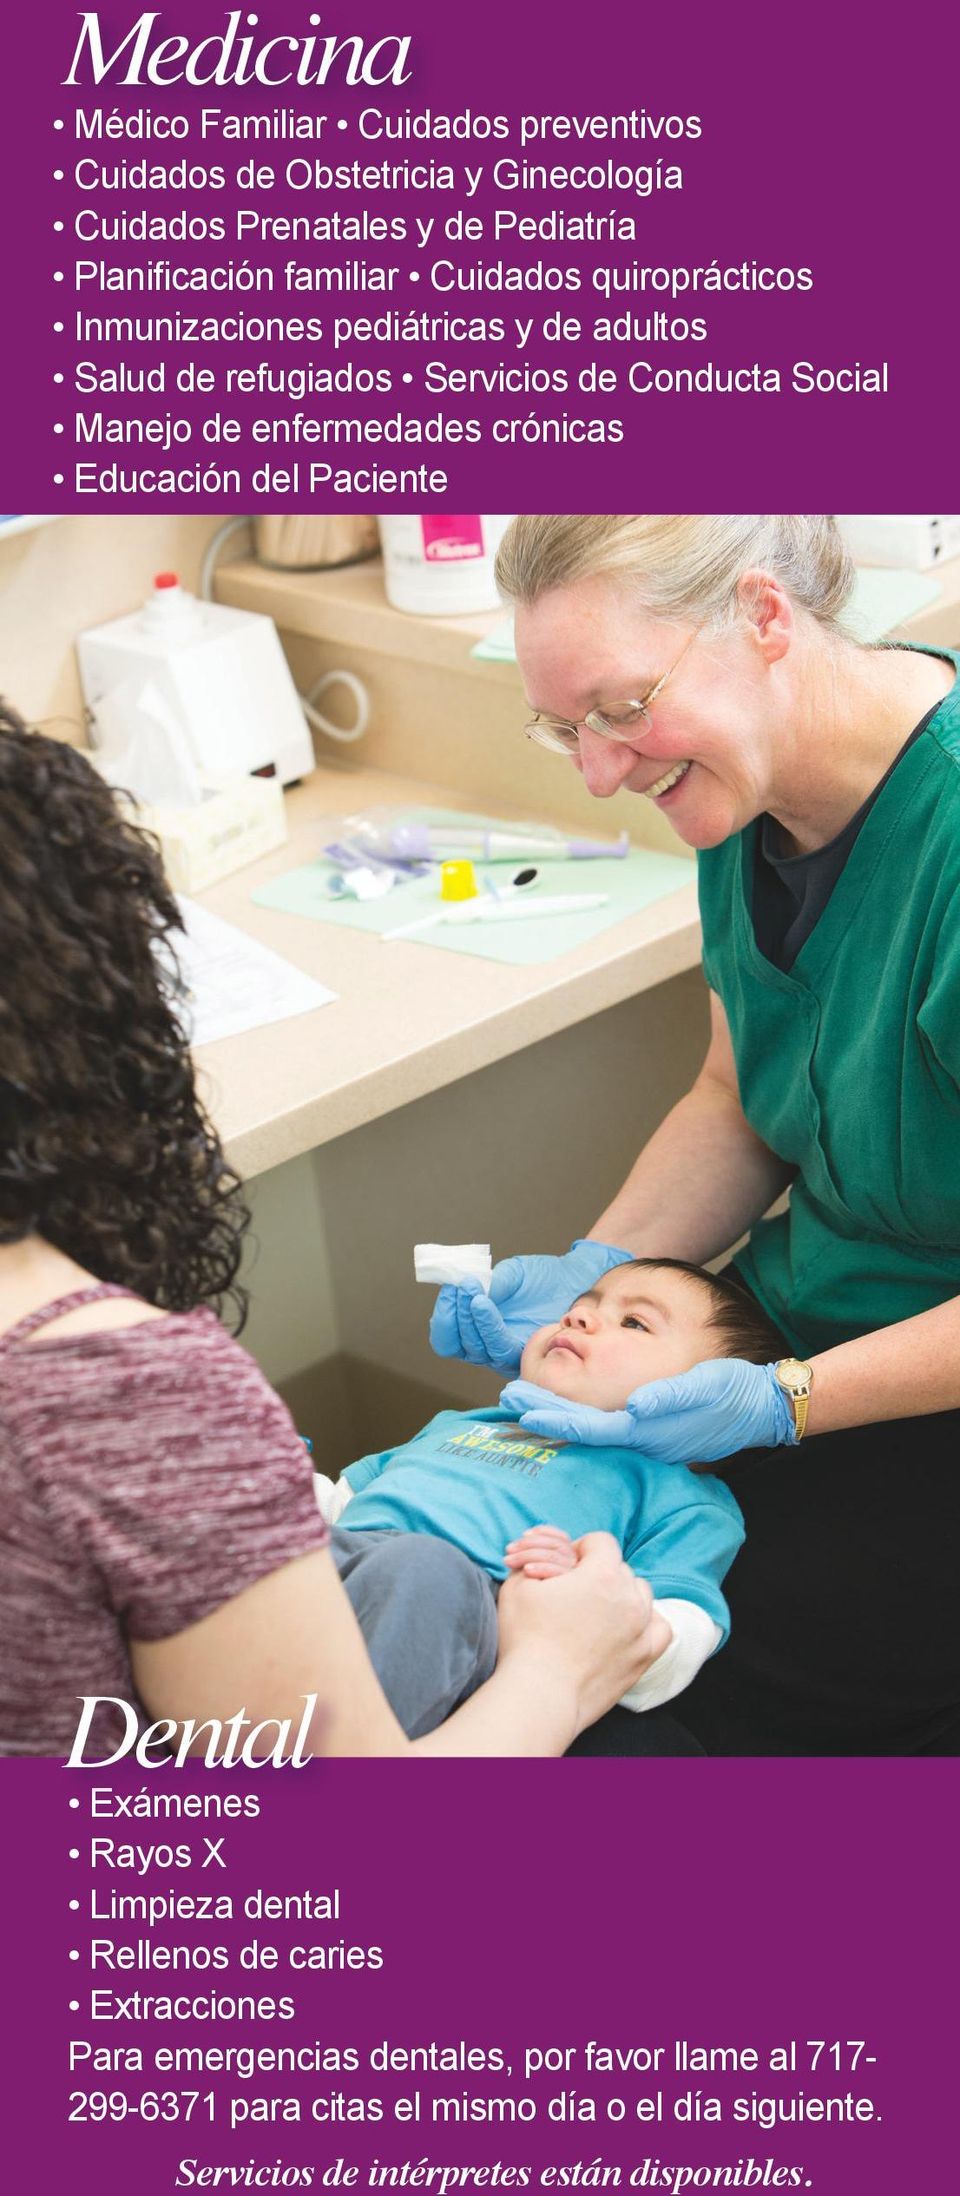 Social Manejo de enfermedades crónicas Educación del Paciente Dental Exámenes Rayos X Limpieza dental Rellenos de caries